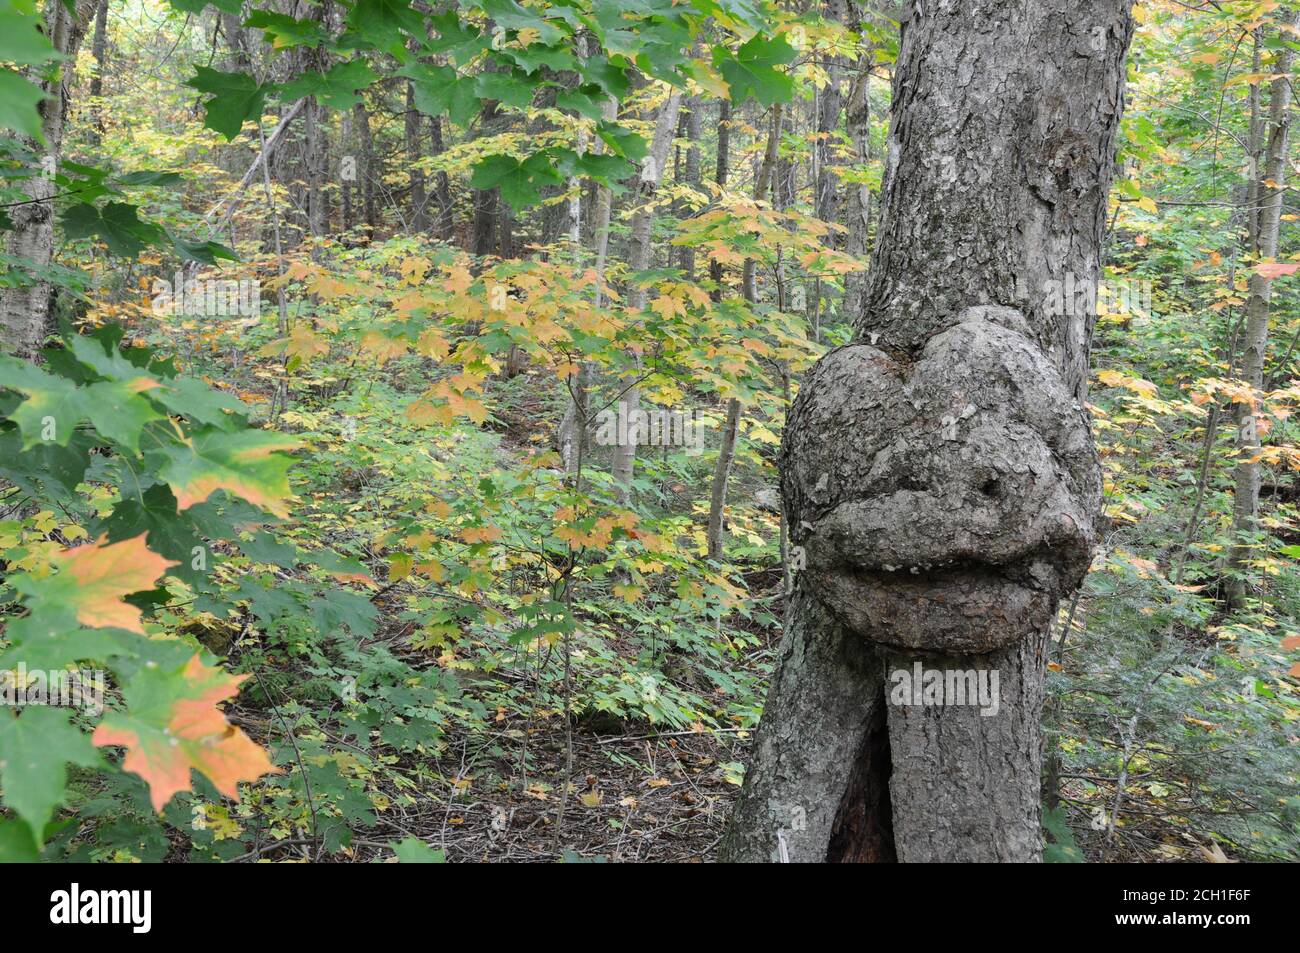 Árbol con rostro humano sonriente en la naturaleza con una ilusión majestuosa en el bosque, una rareza y fenómenos asombrosos. Foto de stock